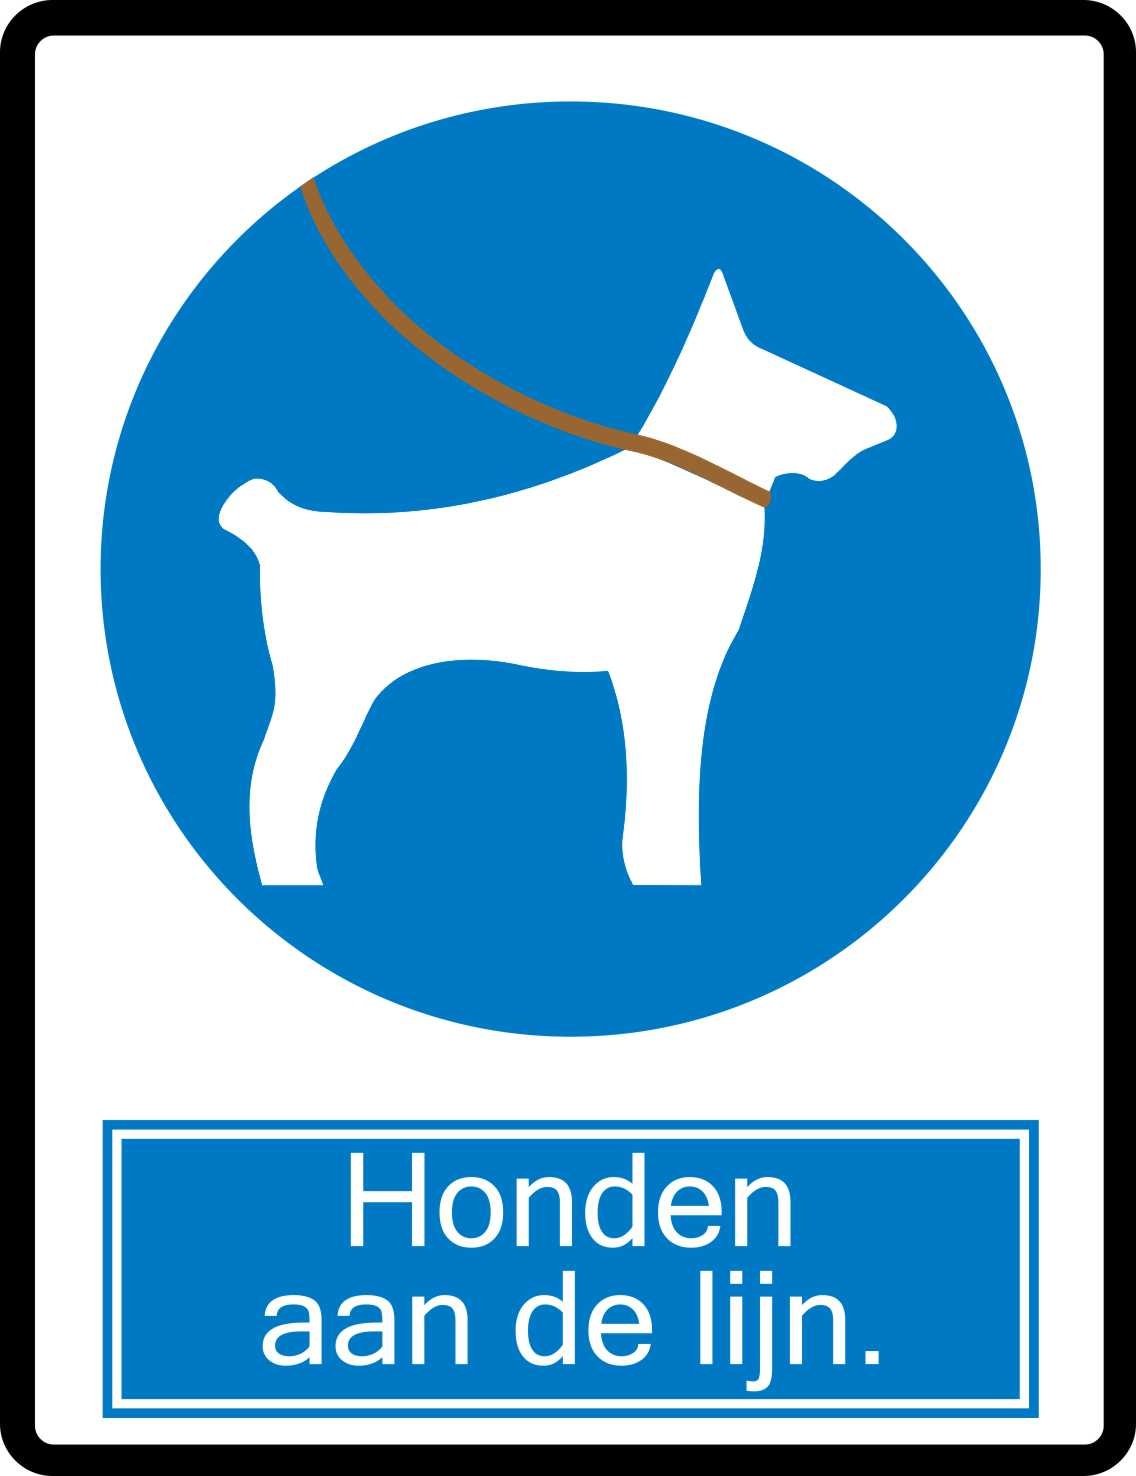 Smederij plek bad Honden aan de lijn pictogram sticker - JERMA AllerhandeStickers